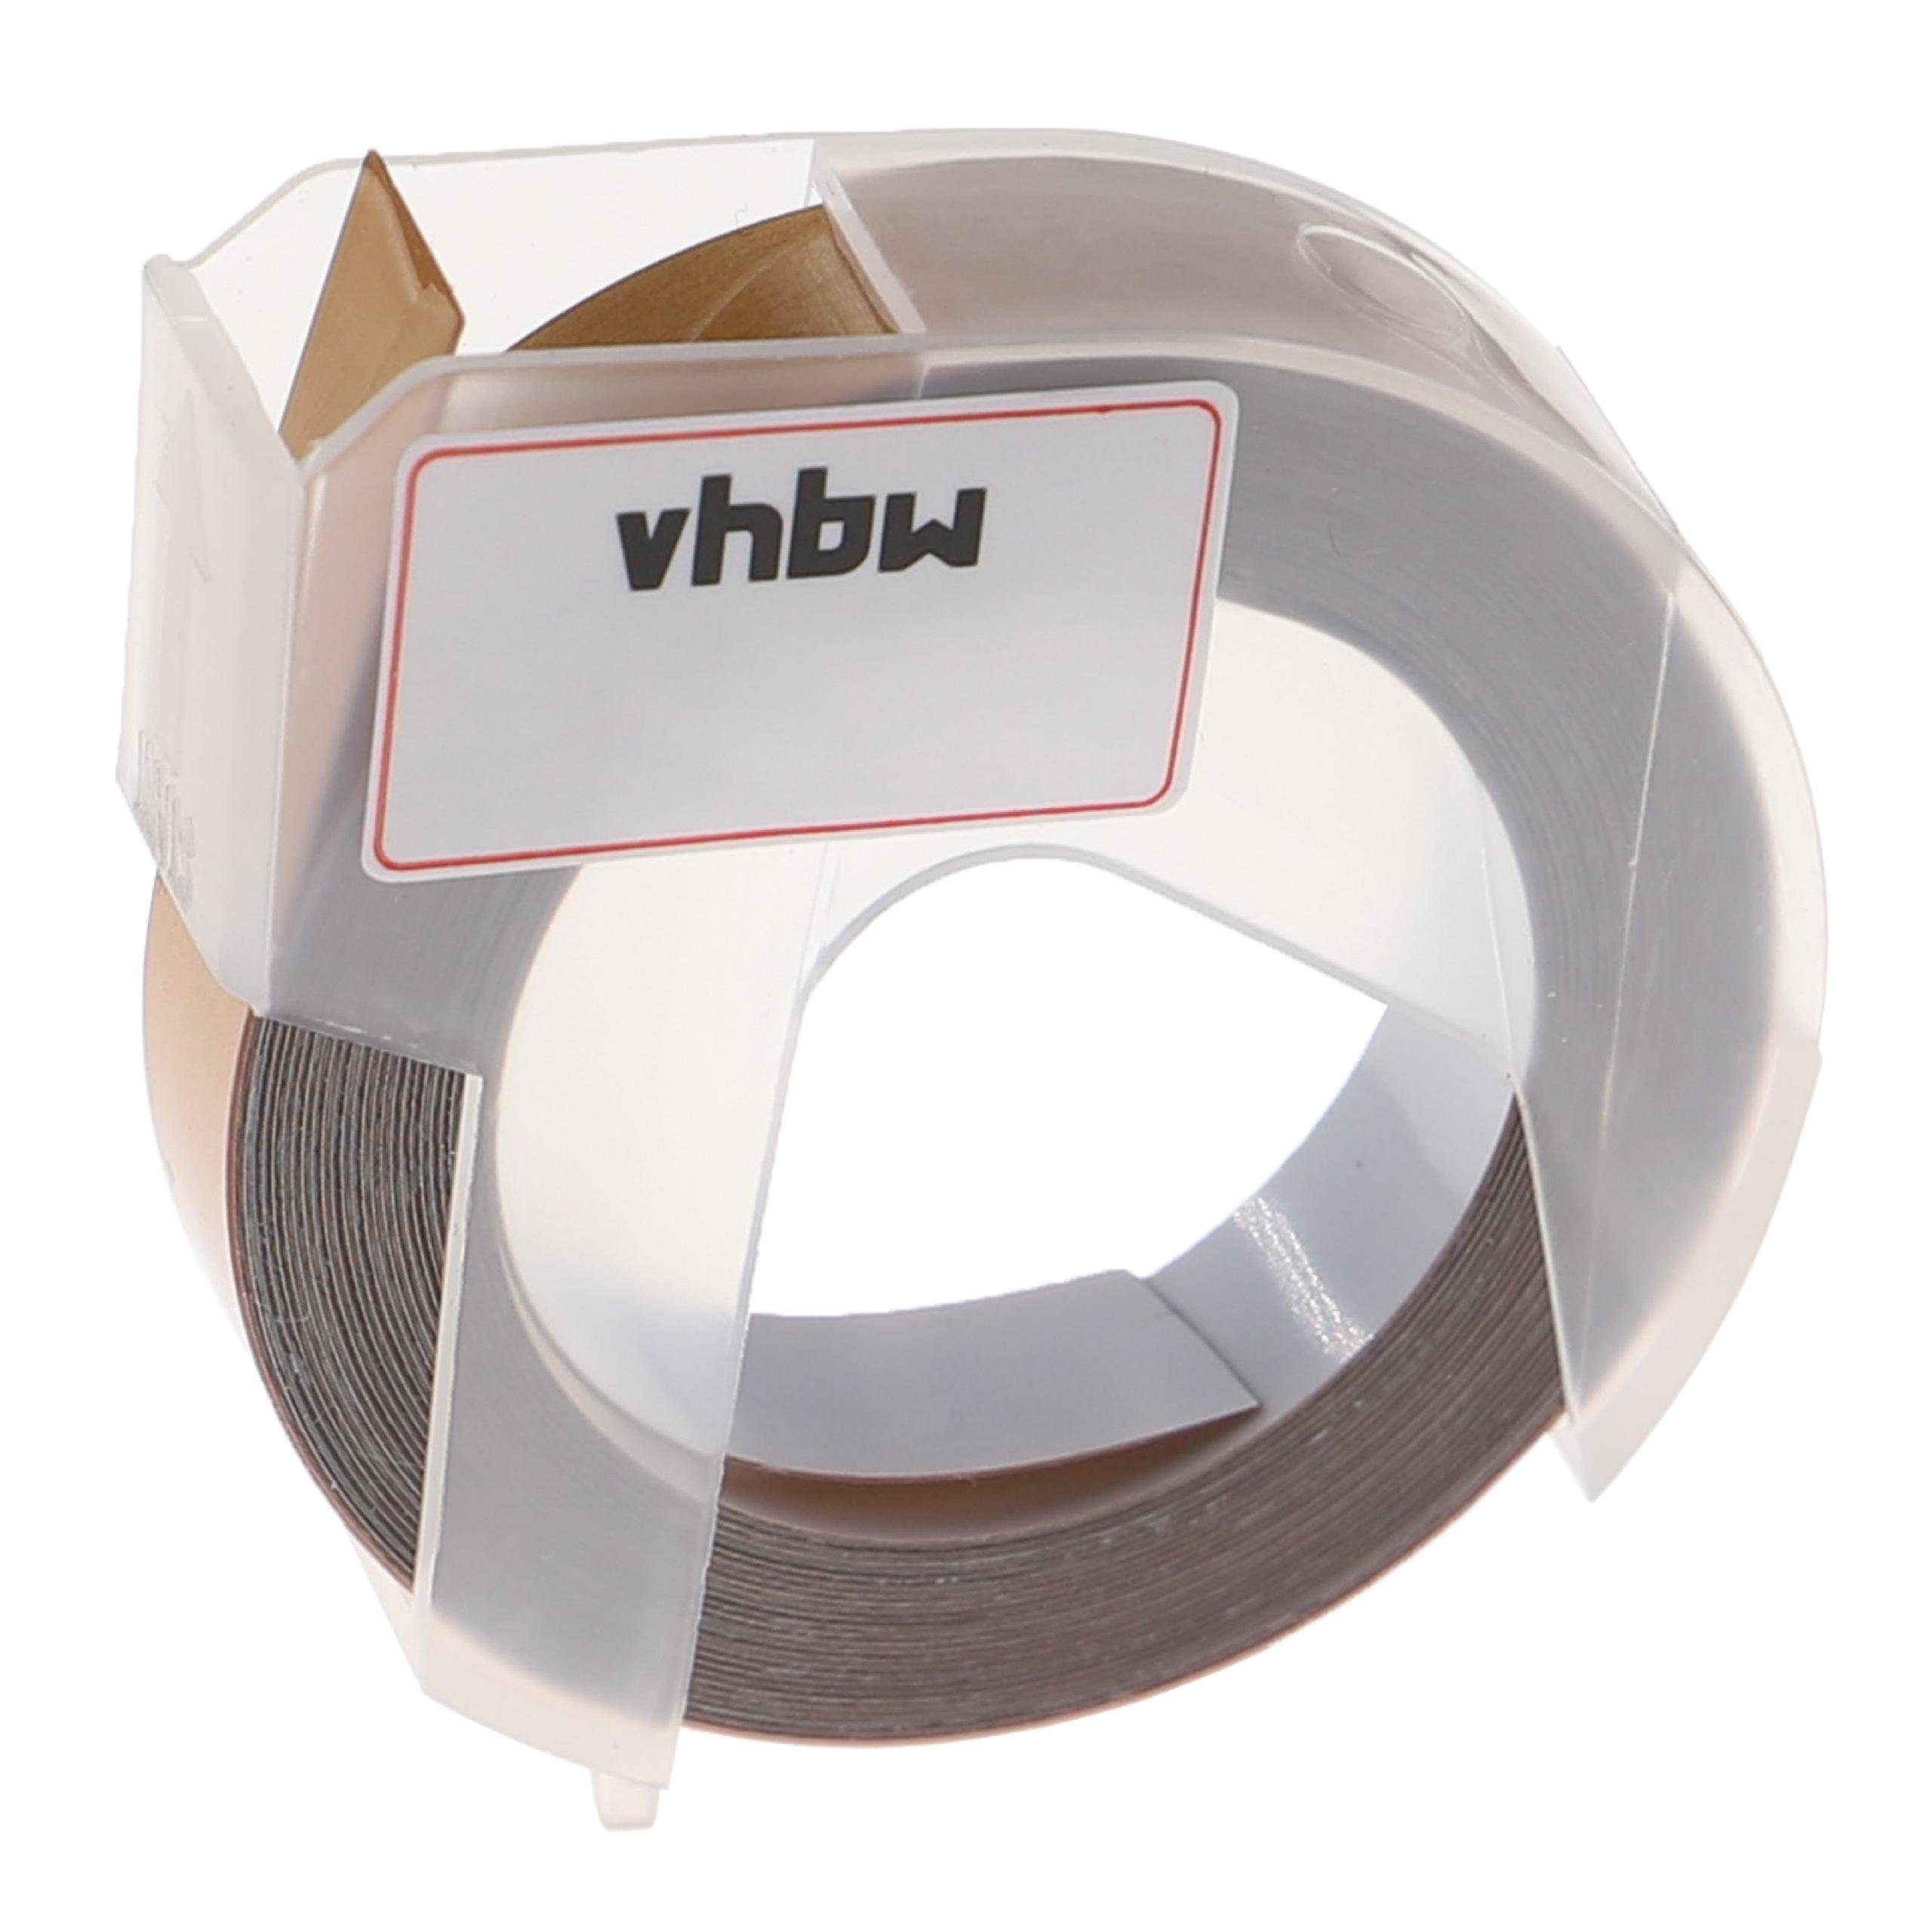 vhbw Beschriftungsband passend für Dymo Organizer Xpress Pro Beschriftungsgerät / Drucker &